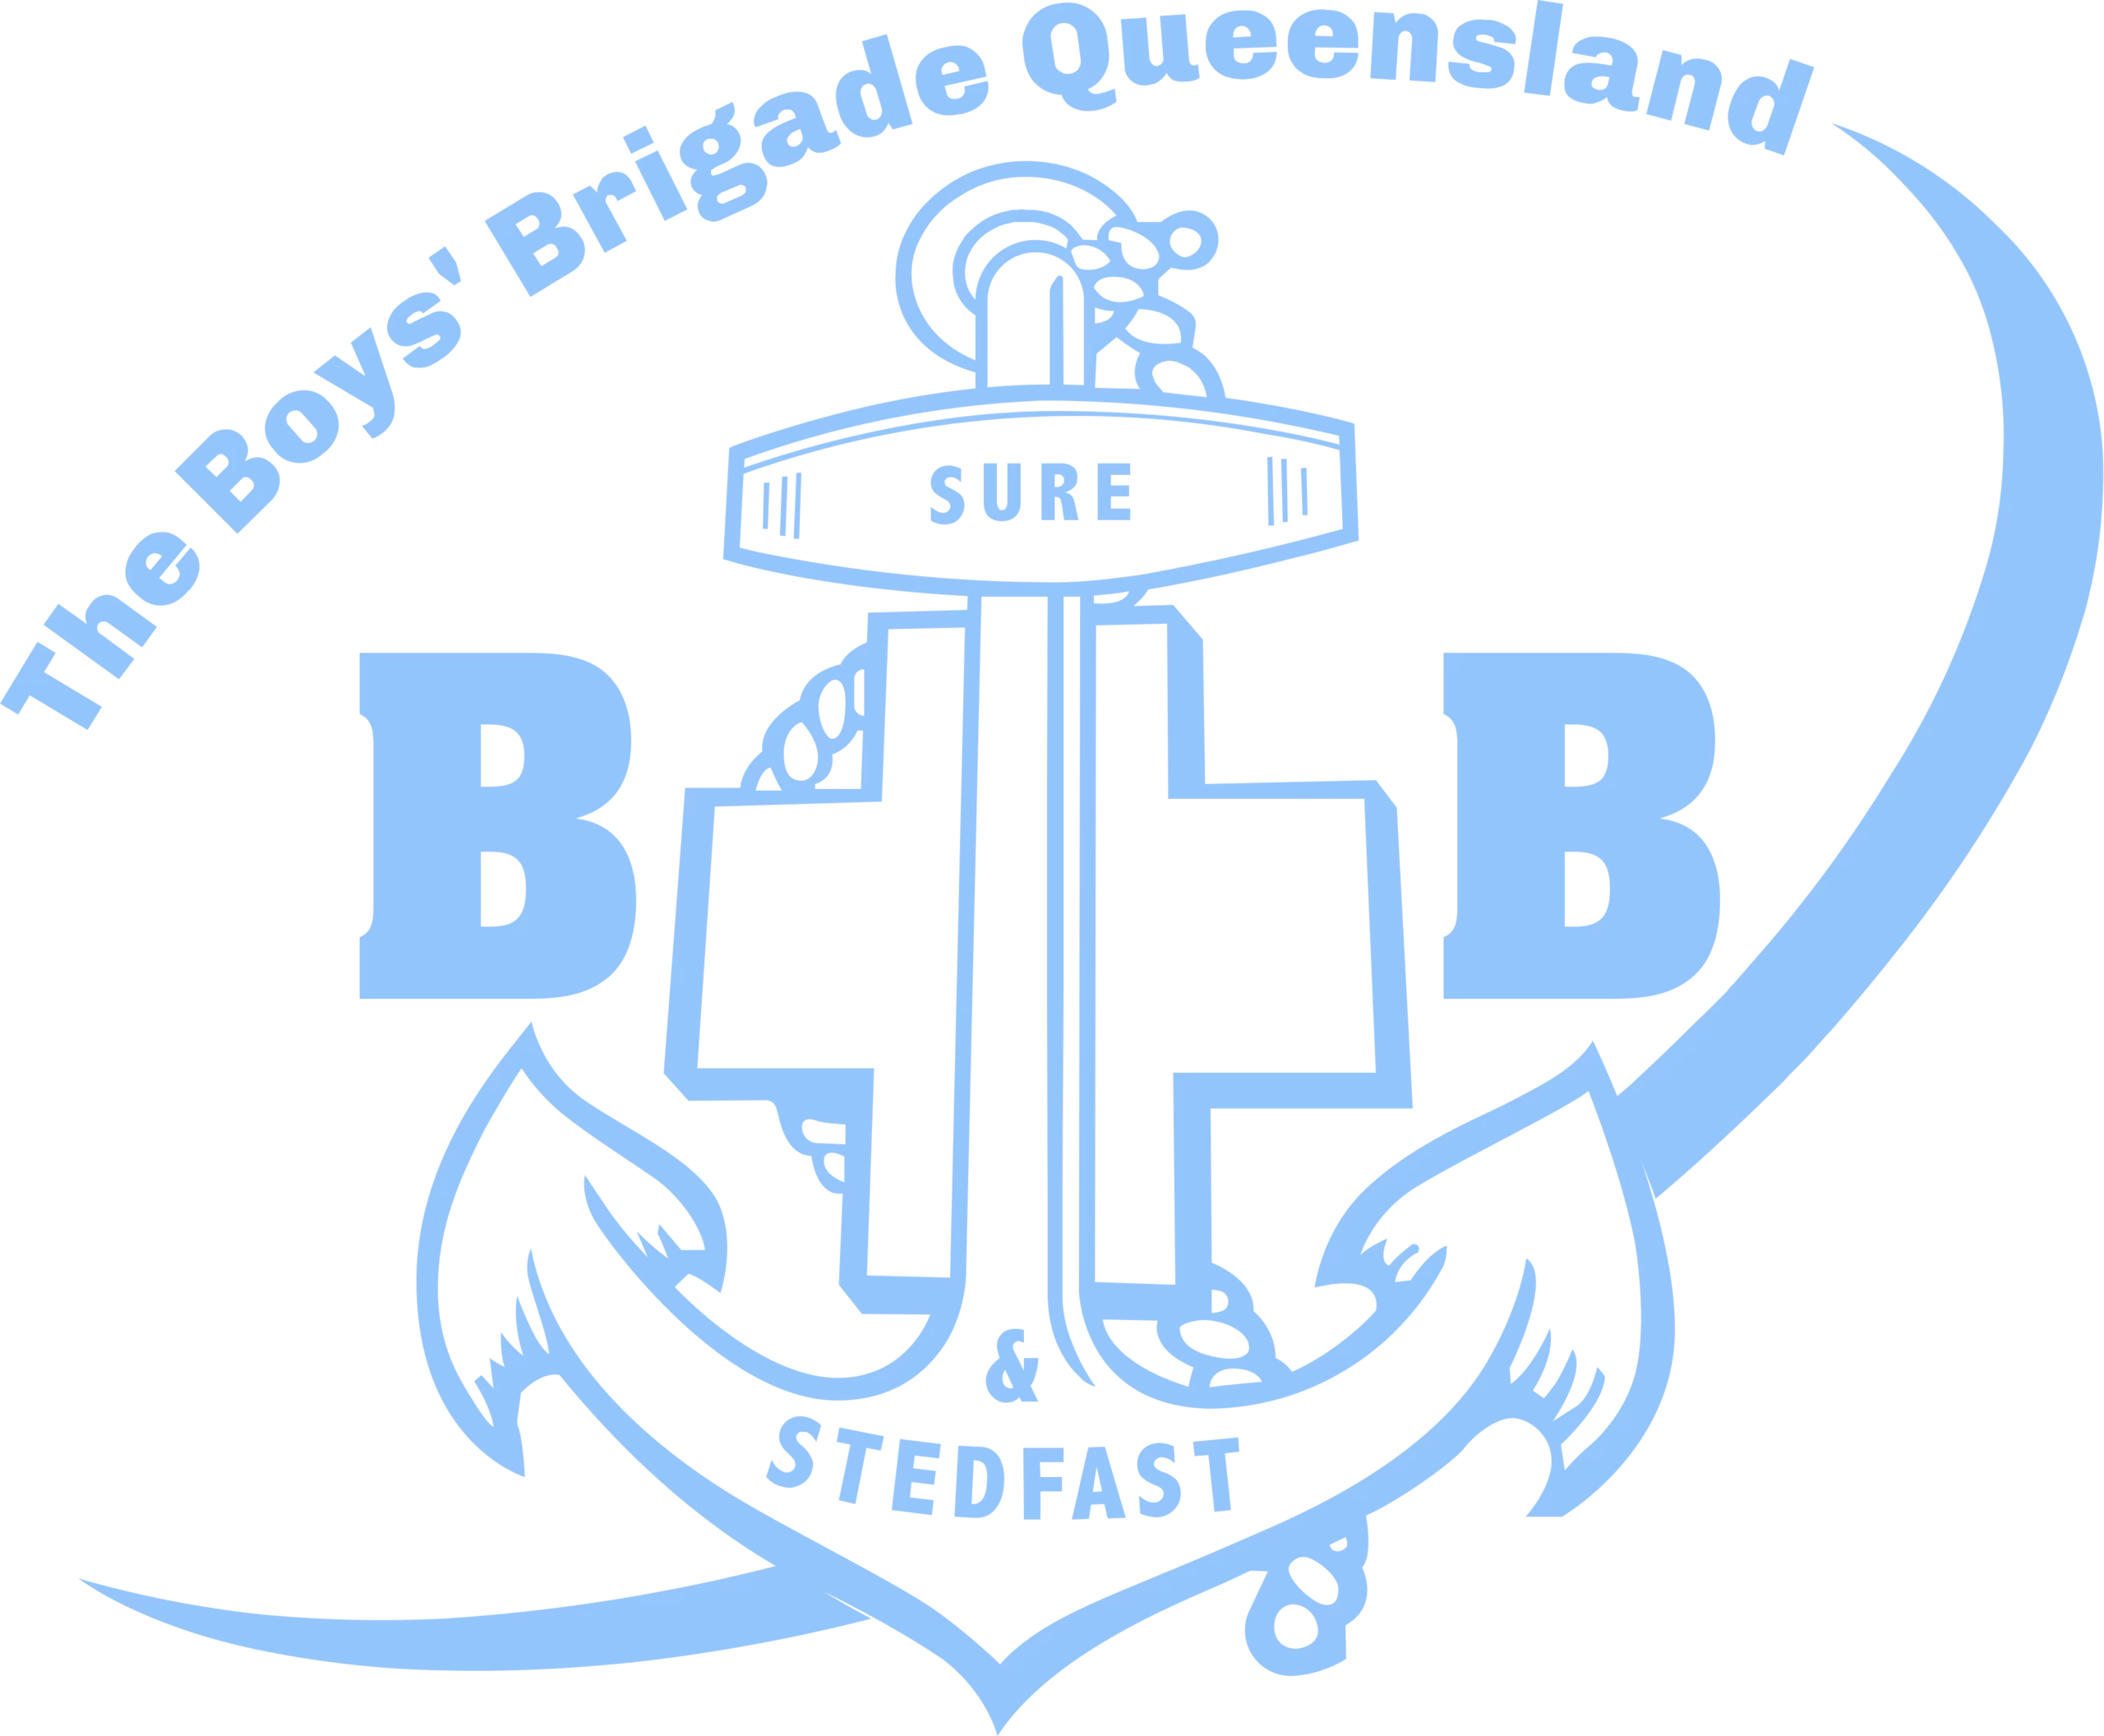 The Boys' Brigade Queensland